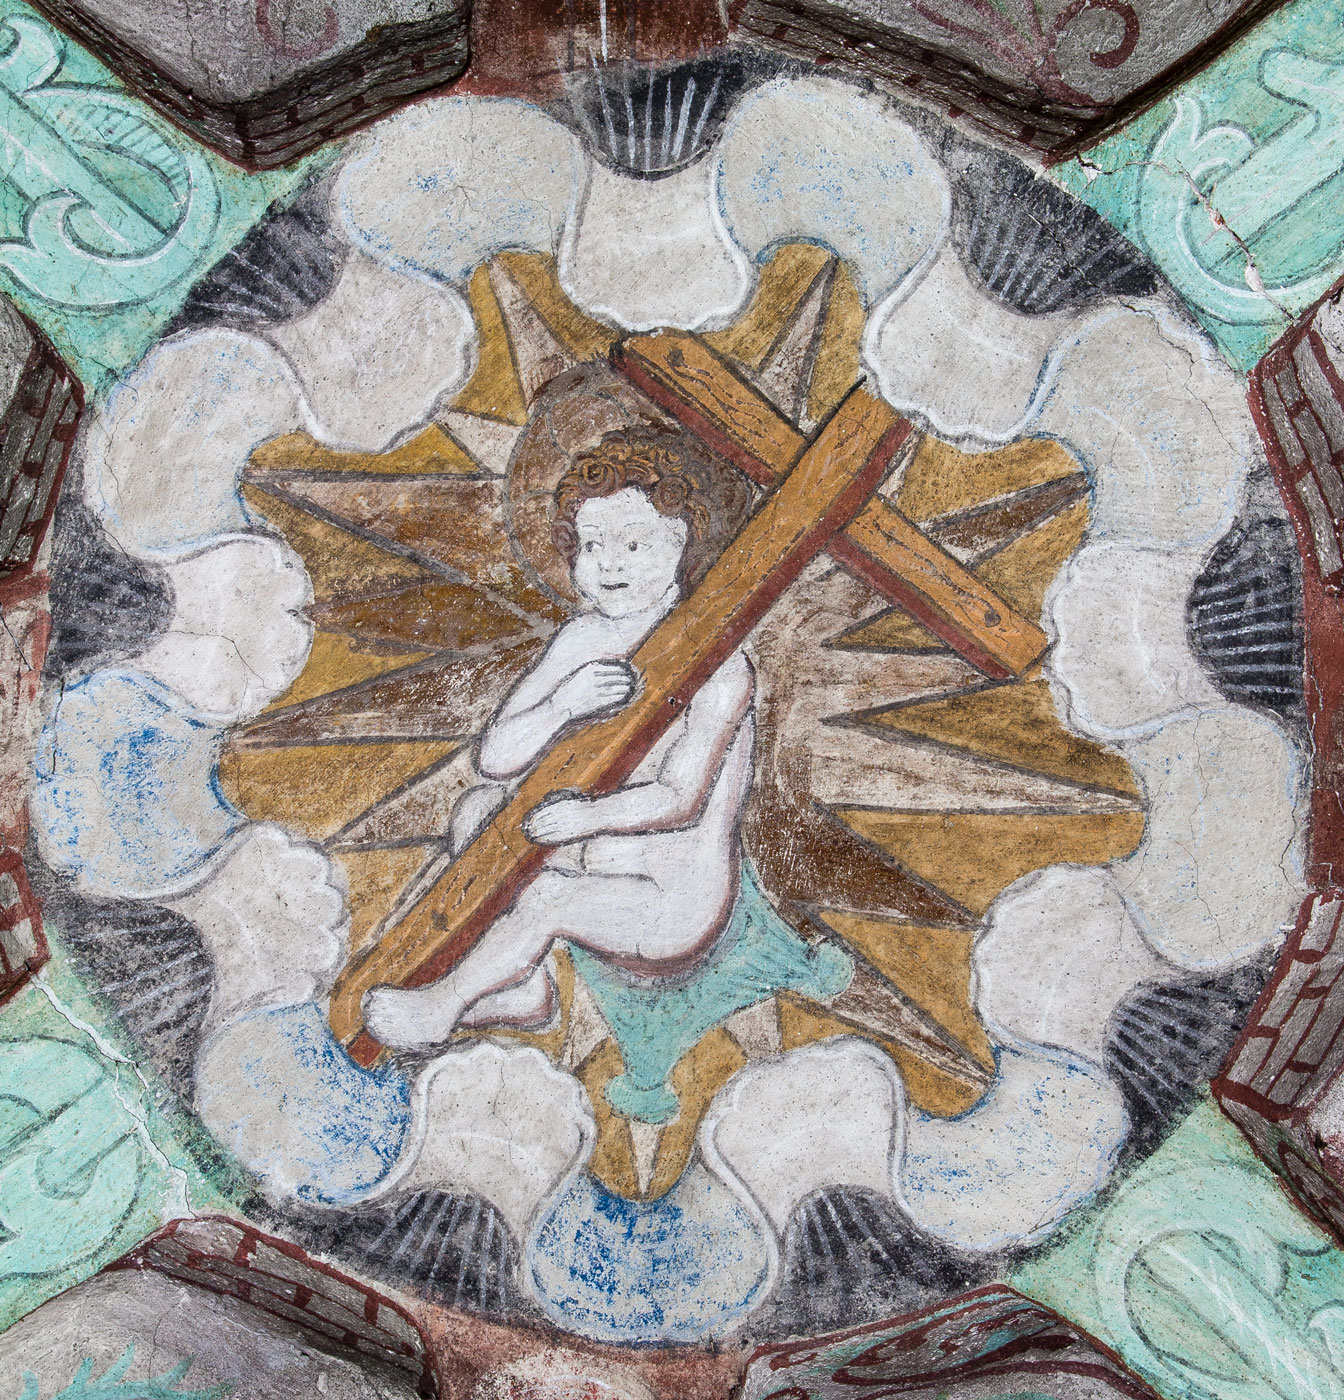 Jesusbarnet med korset i en stjärna (Betlehemsstjärnan). Medeltida träsnitt som förlaga, avsett som nyårshälsning - Härkeberga kyrka